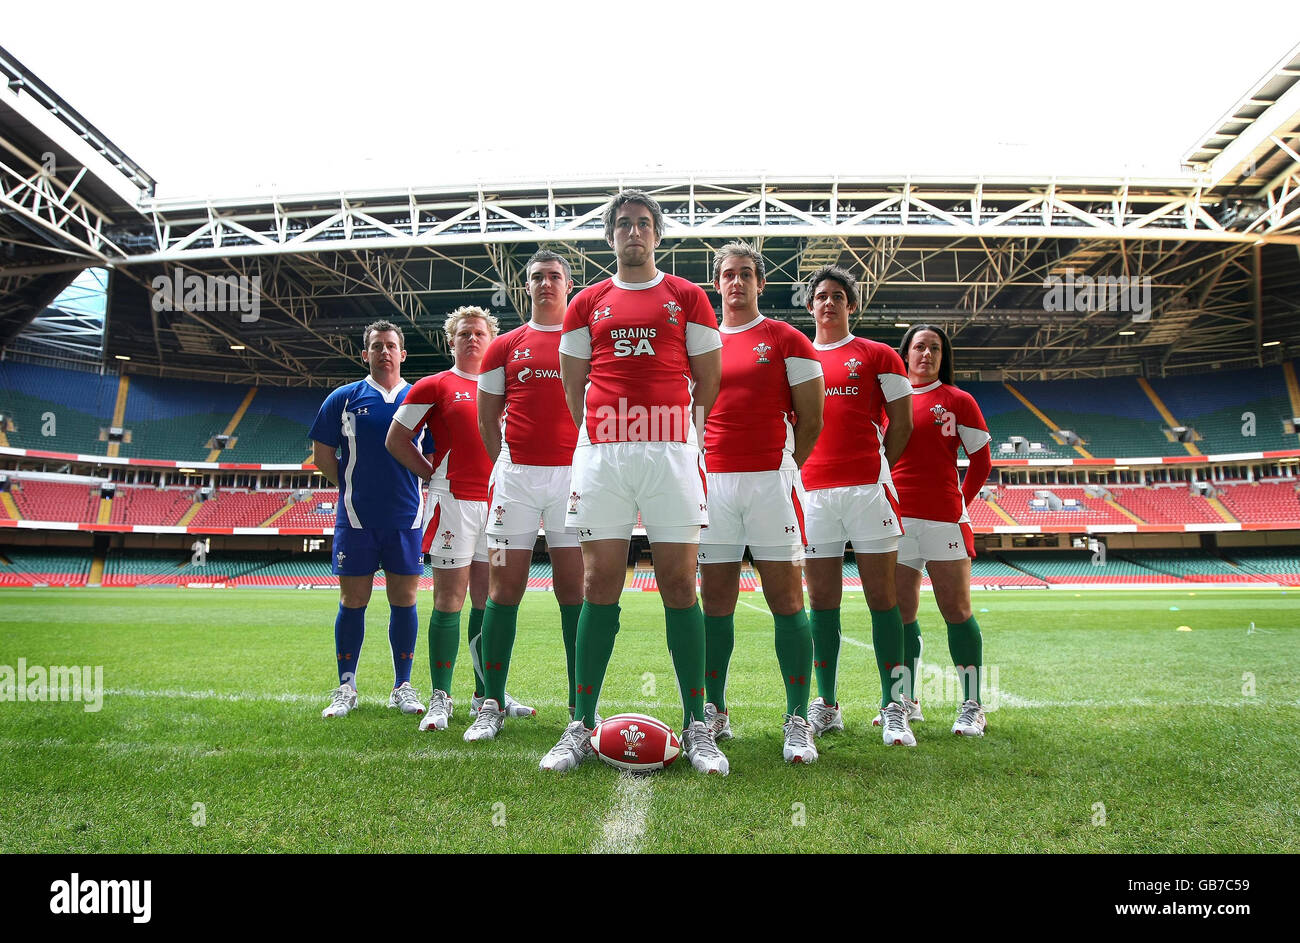 Rugby Union - Under Armour e Welsh Rugby Union rivelano il nuovo Kit -  Millennium Stadium. Il capitano del Galles Ryan Jones con membri di altre  squadre del Galles svela la nuova